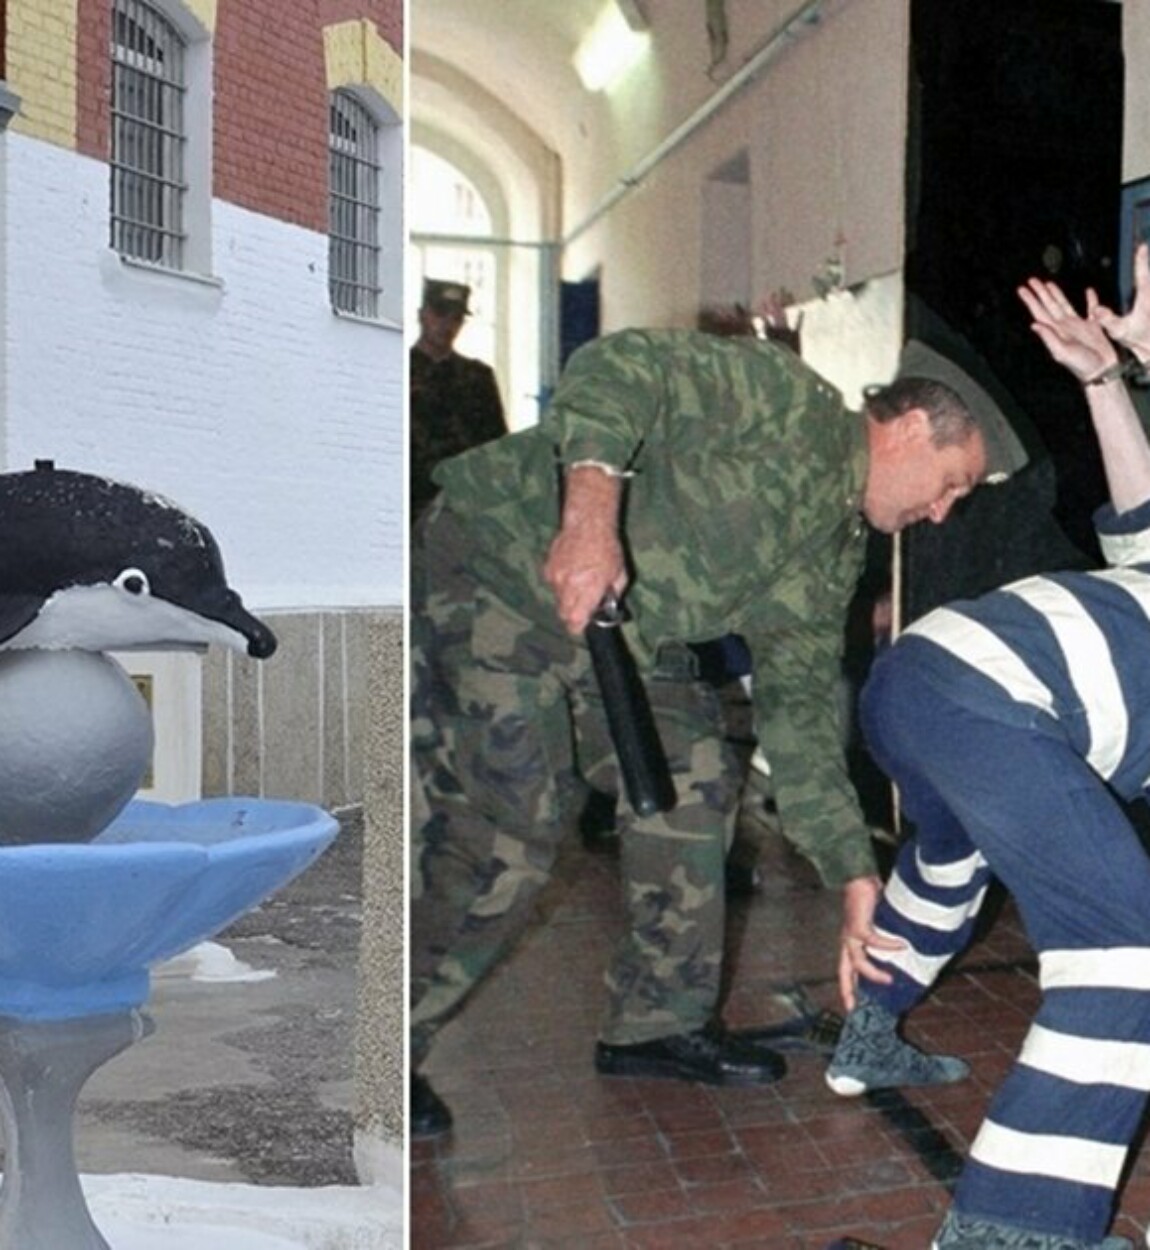 Где черный дельфин зона. Соль-Илецк тюрьма черный Дельфин. Соль-Илецк тюрьма черный Дельфин заключенные. ИК-6 черный Дельфин. Фонтанчик с черным дельфином тюрьма.